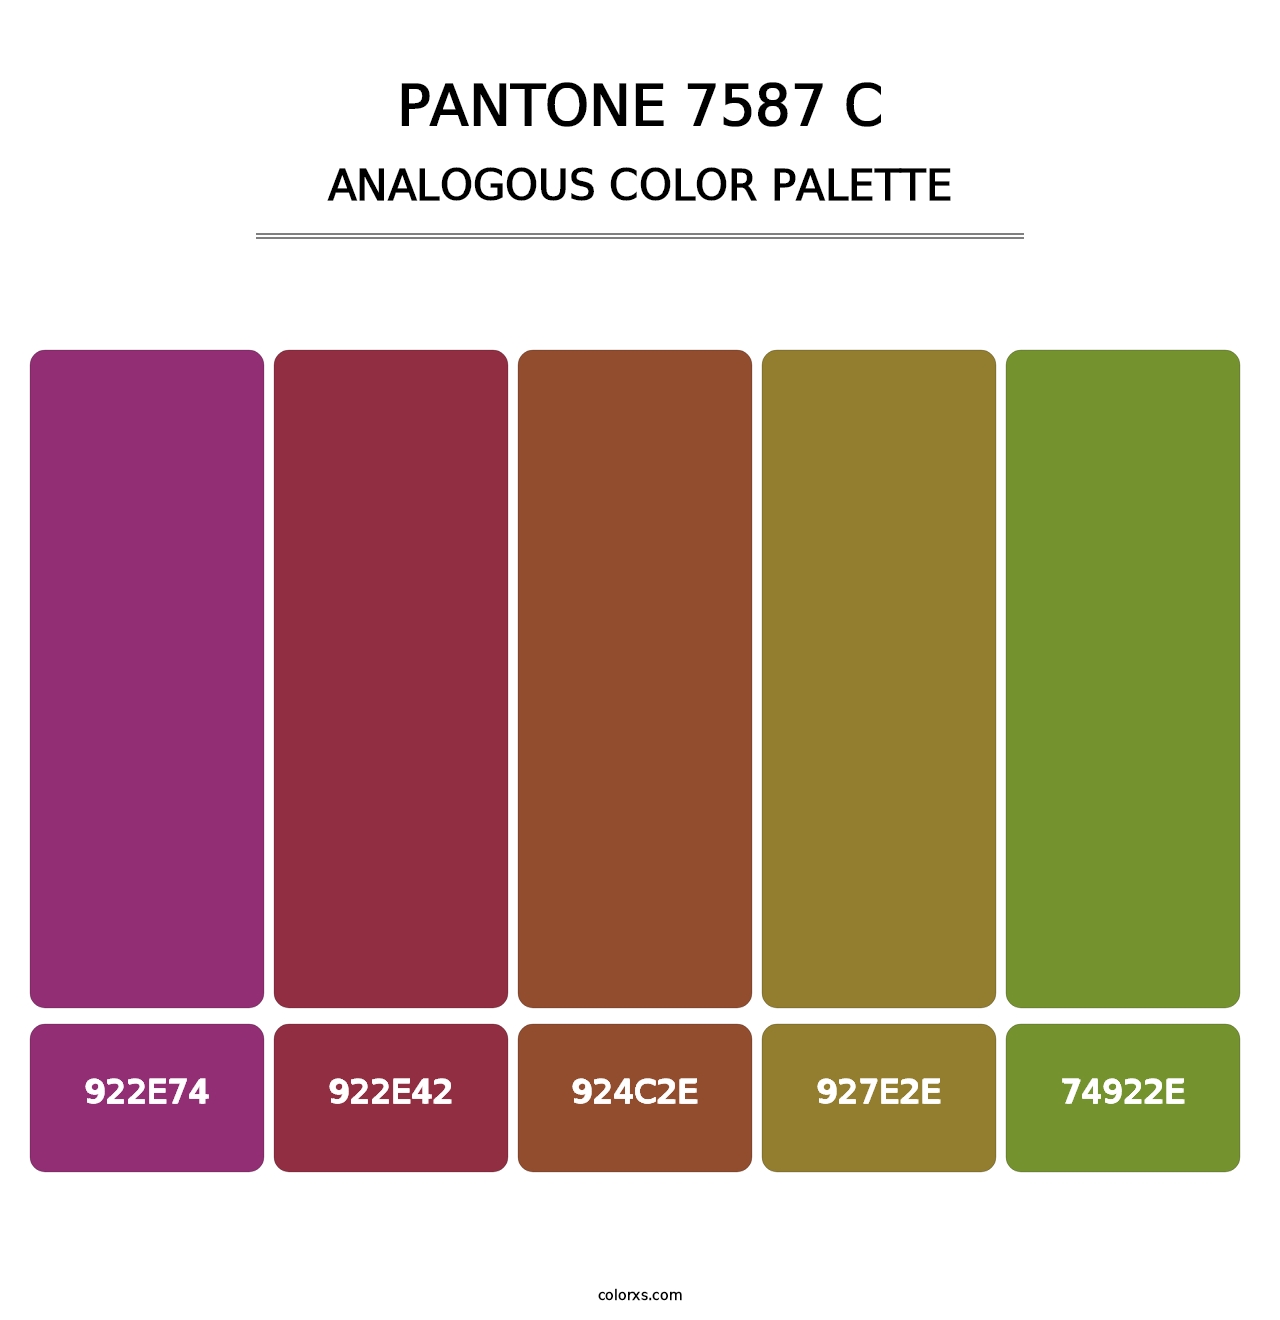 PANTONE 7587 C - Analogous Color Palette